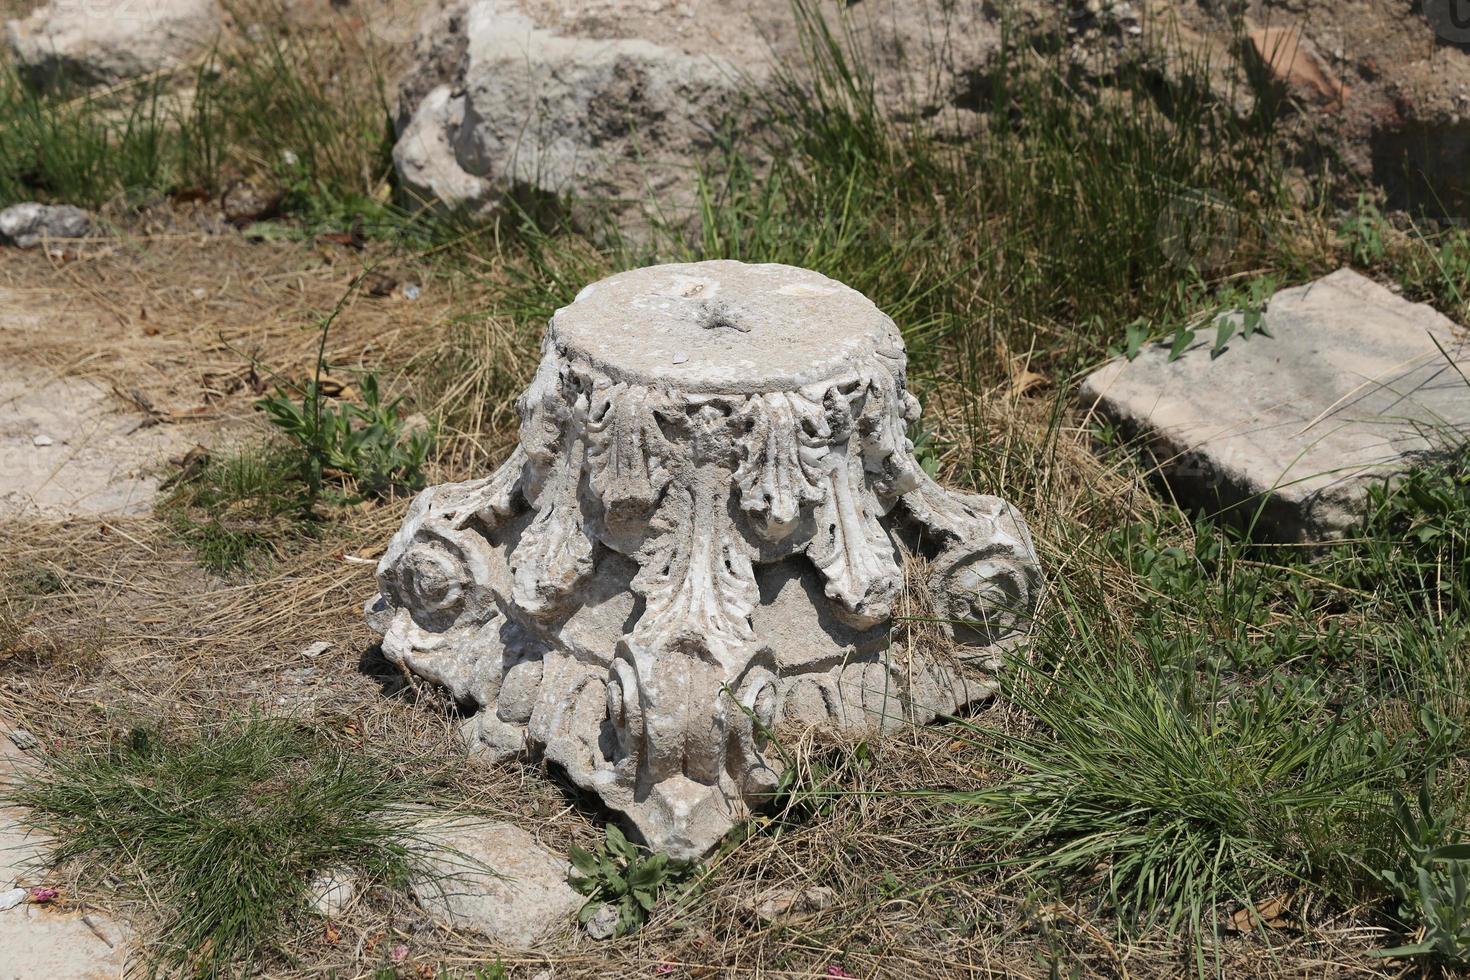 Ruins in Hierapolis Ancient City, Turkey photo